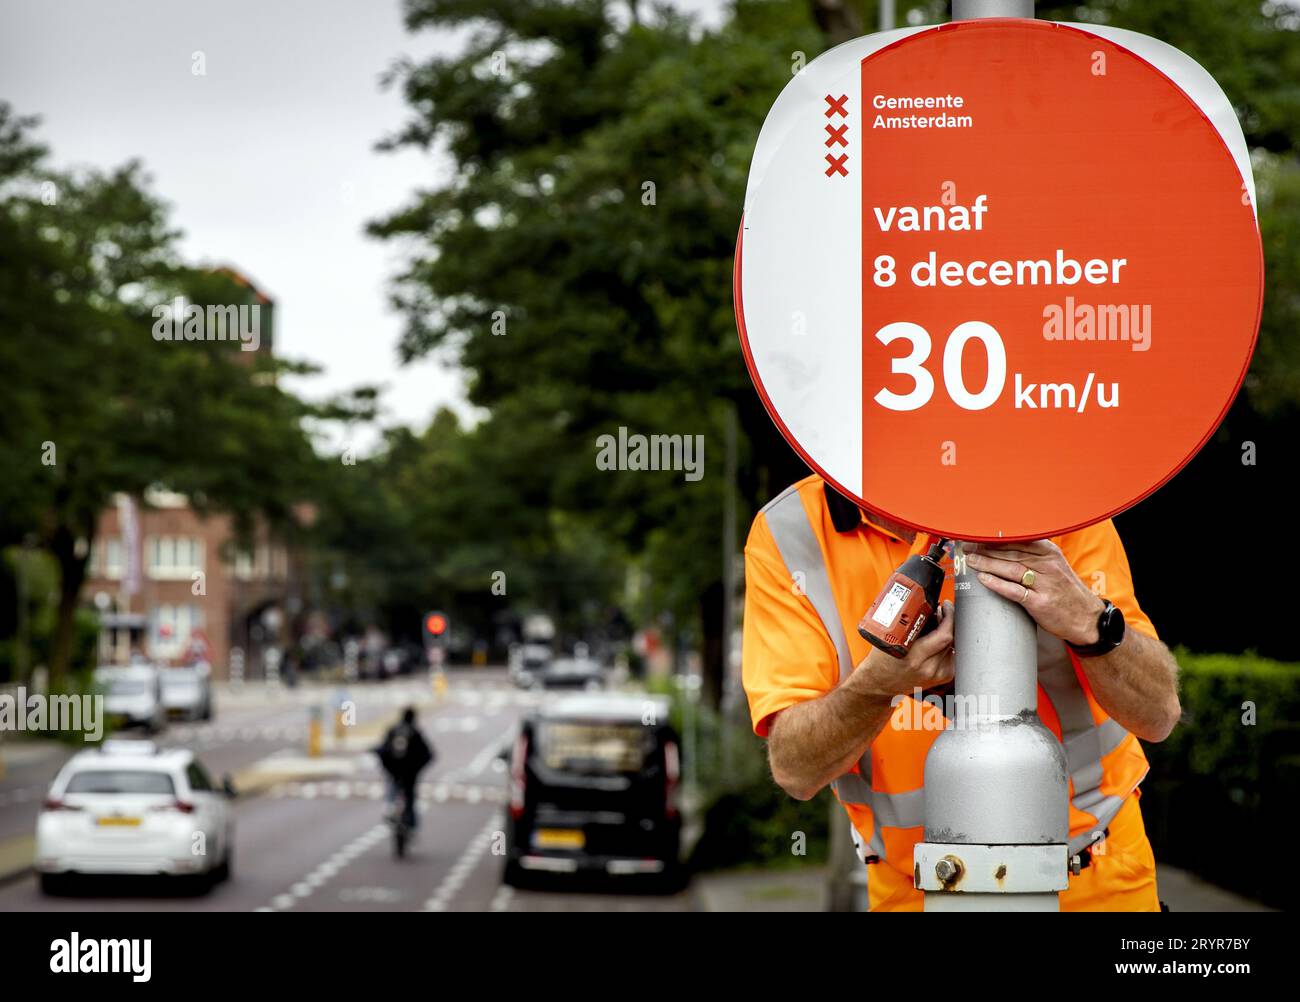 AMSTERDAM - Un dipendente municipale inserisce un segnale di velocità. Amsterdam si appresta a introdurre il limite di velocità di 30 chilometri orari. La misura entrerà in vigore a dicembre, ma sono già in corso l'installazione di nuovi segnali di velocità, l'adeguamento dei semafori e l'adozione di altre misure infrastrutturali. ANP KOEN VAN WEEL paesi bassi fuori - belgio fuori Foto Stock